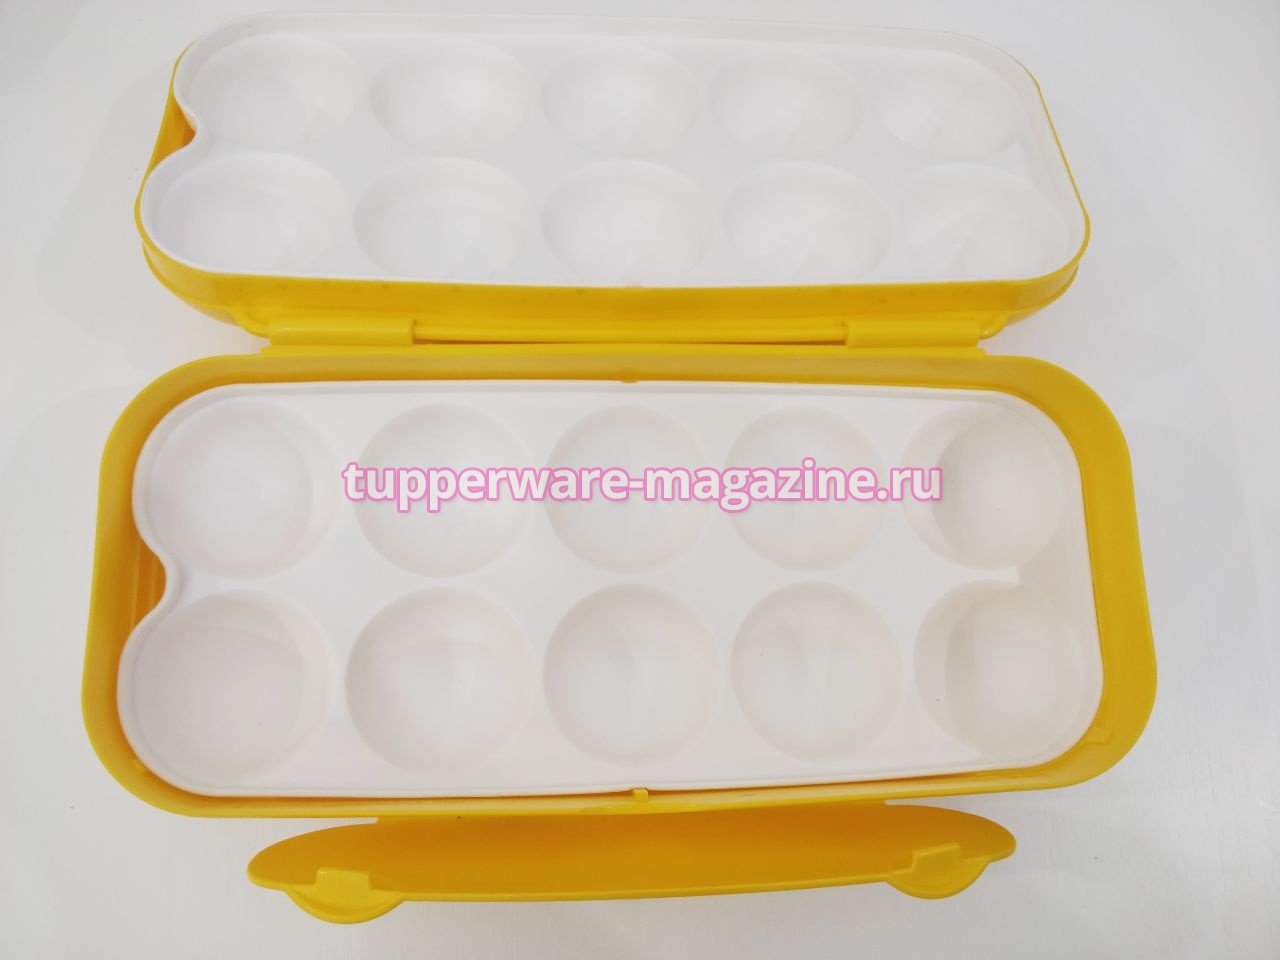 Контейнер для 10 яиц Tupperware в желтом цвете